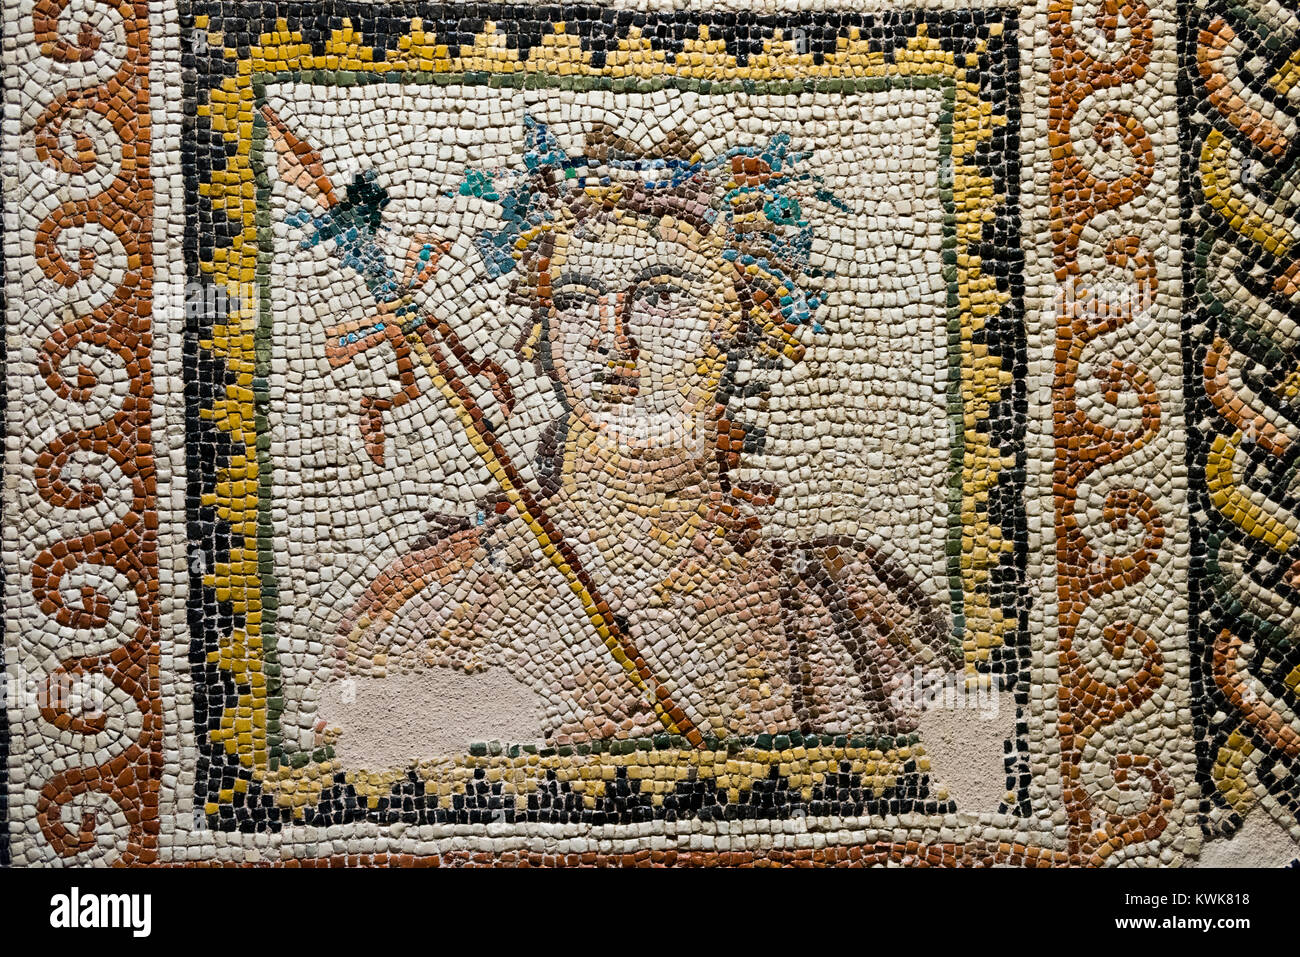 GAZIANTEP, TURQUIE - 15 décembre, 2017 : musée des mosaïques de Zeugma,l'une des plus importantes collection mosaïque dans le monde. Banque D'Images